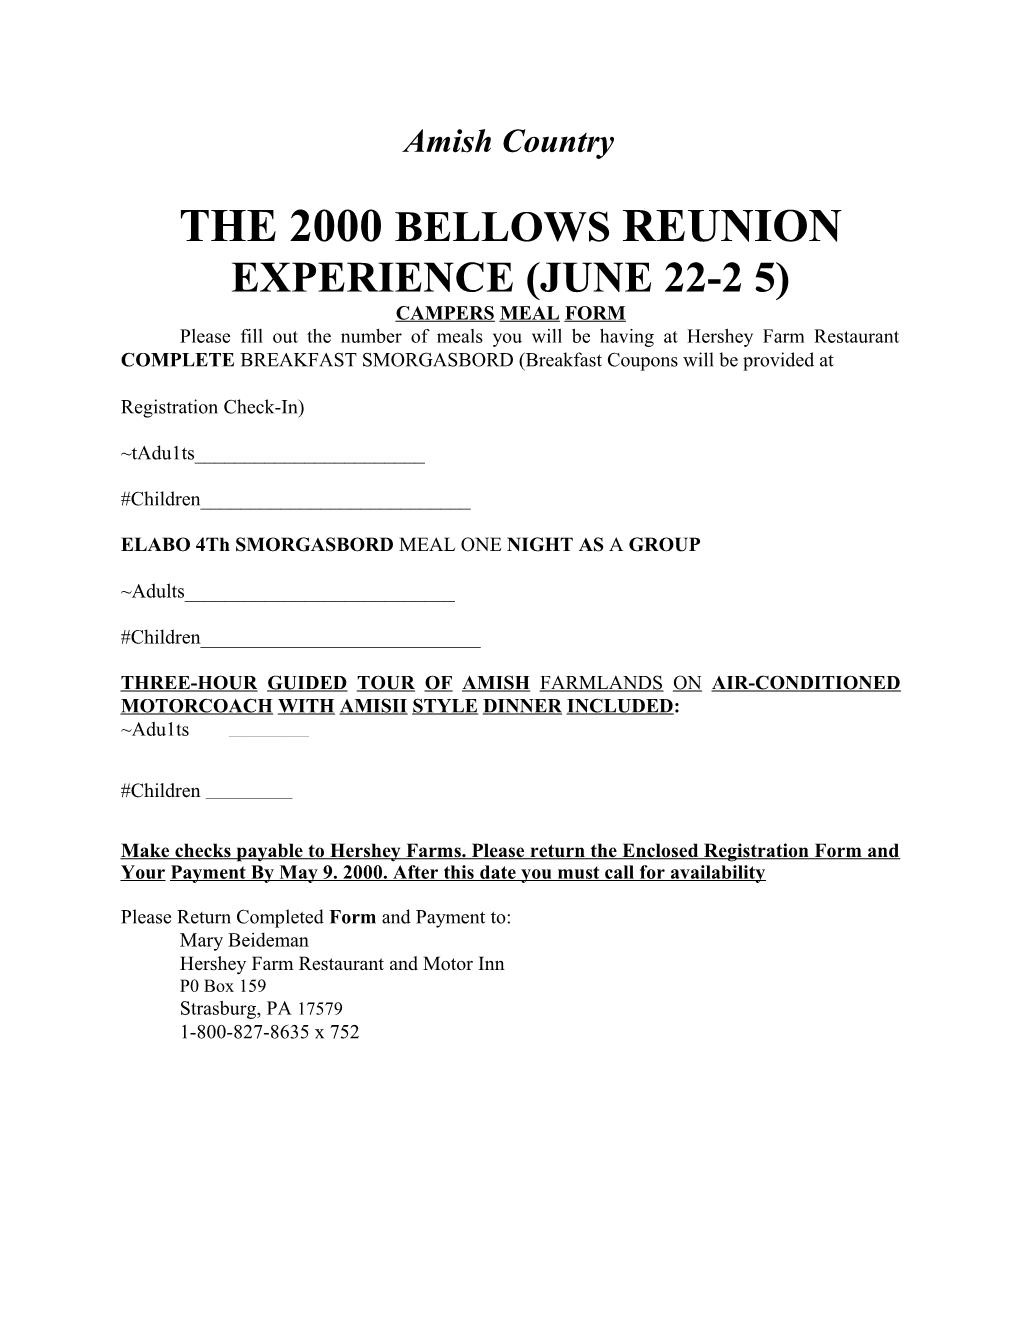 The 2000 Bellows Reunion